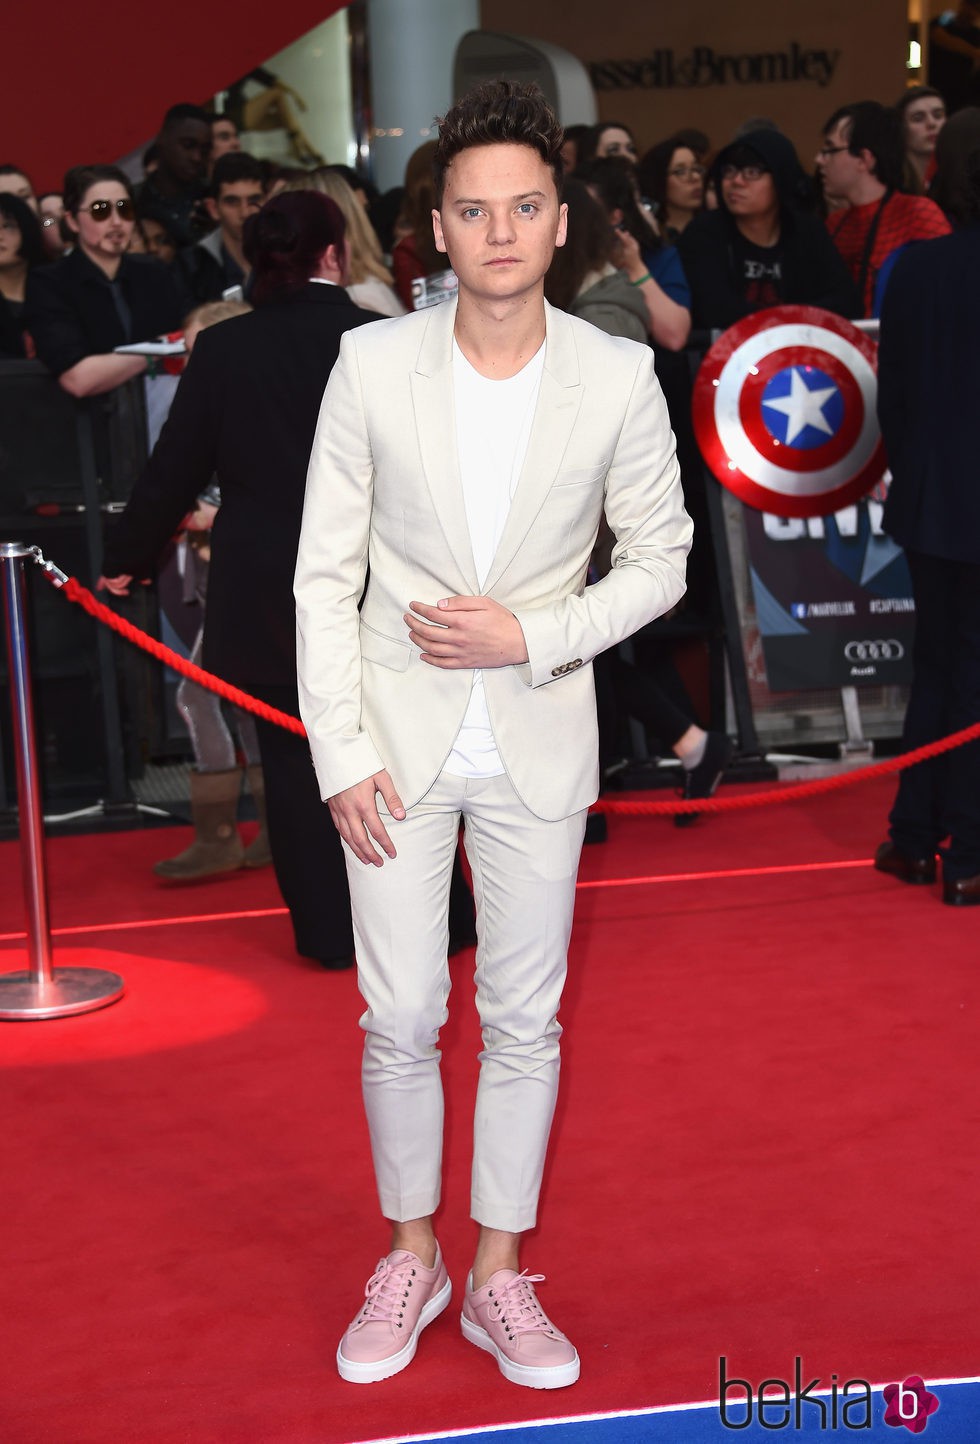 Conor Maynard en la premiere de la película 'Capitán América: Civil War' en Londres